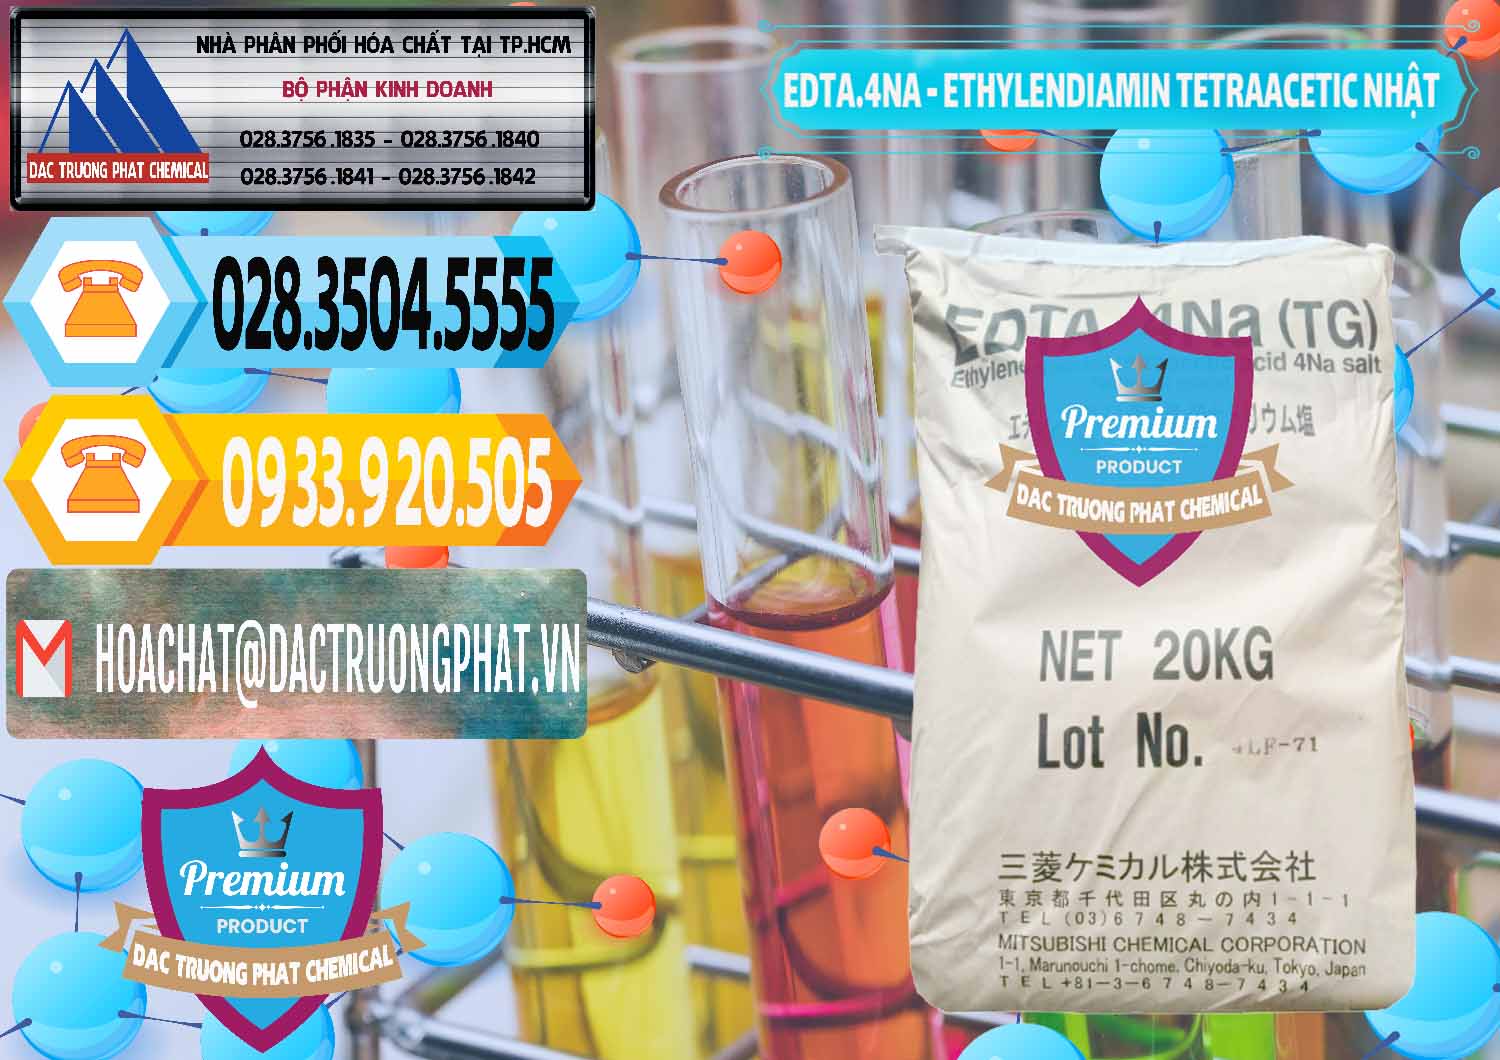 Cung ứng ( bán ) EDTA 4Na - Ethylendiamin Tetraacetic Nhật Bản Japan - 0482 - Chuyên bán & cung cấp hóa chất tại TP.HCM - hoachattayrua.net